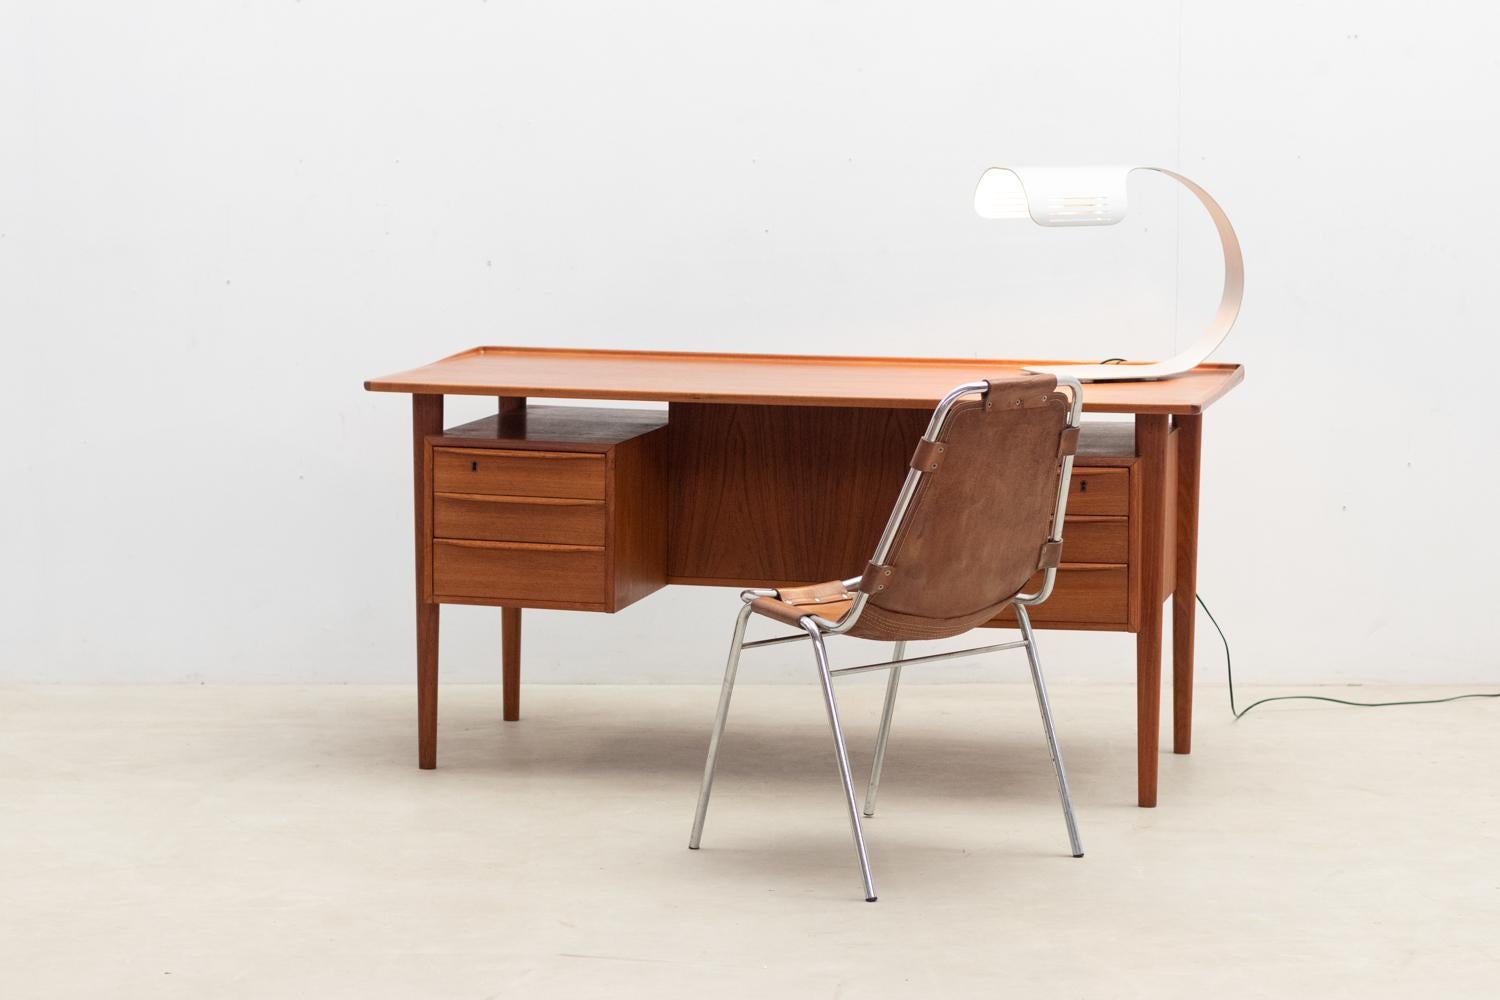 Bureau en teck du milieu du siècle de Peter Løvig Nielsen, fabriqué en 1967 par Hedensted Møbelfabrik, Danemark. Ce bureau à double face, au design minimaliste, est construit en bois de teck chaleureux.

Ce bureau a été tamponné (voir